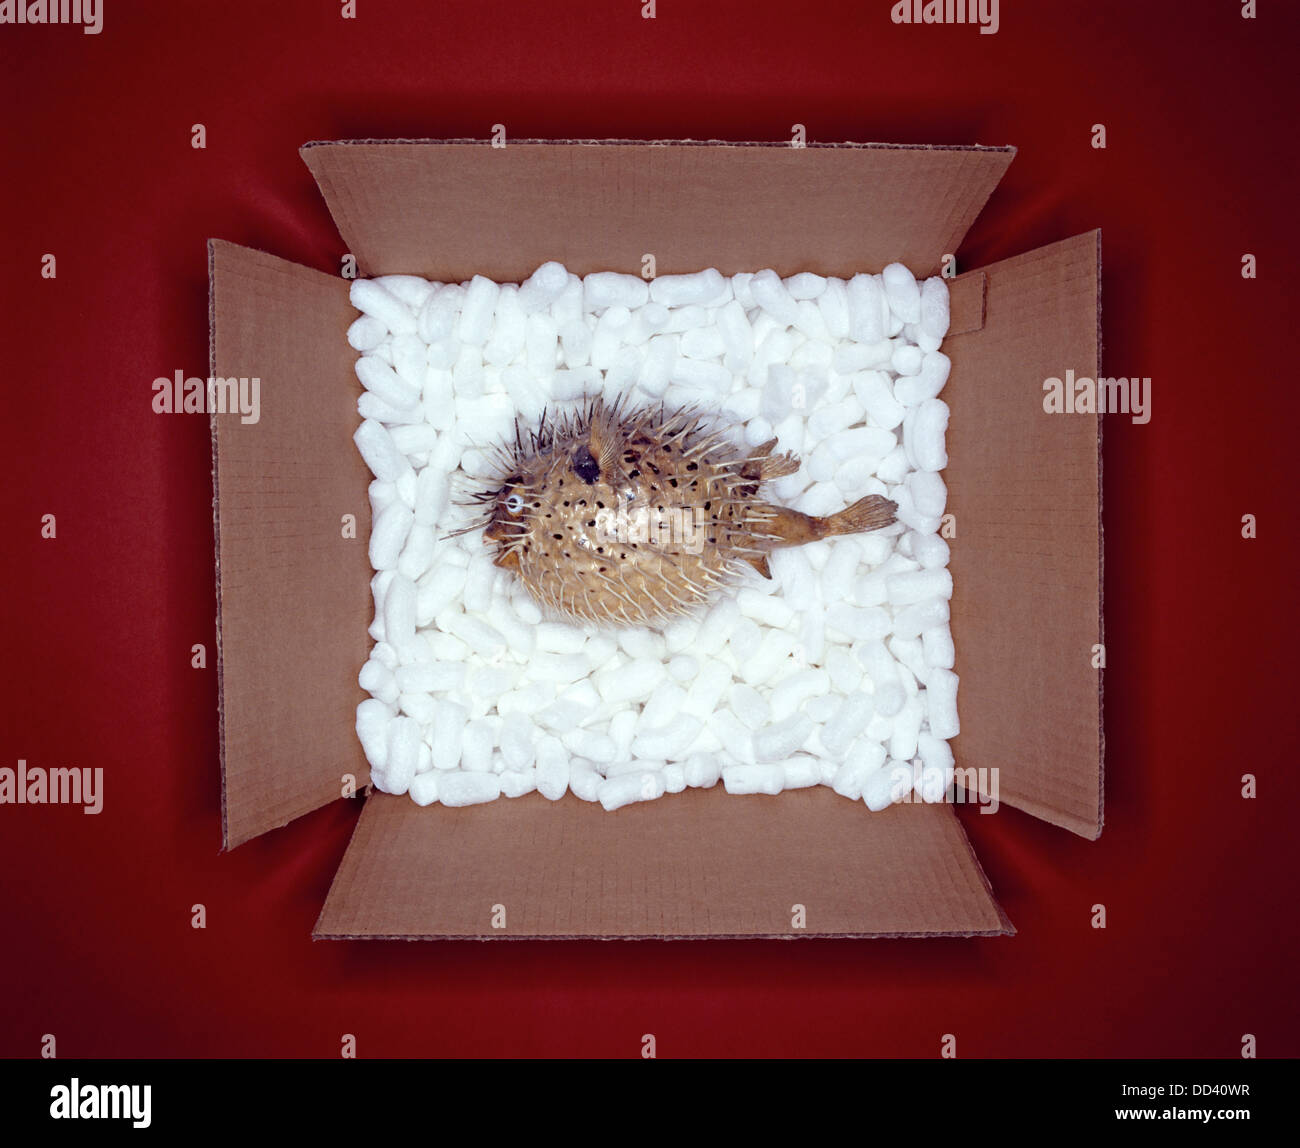 Un pez globo en una caja de cartón con material de embalaje blanca Foto de stock